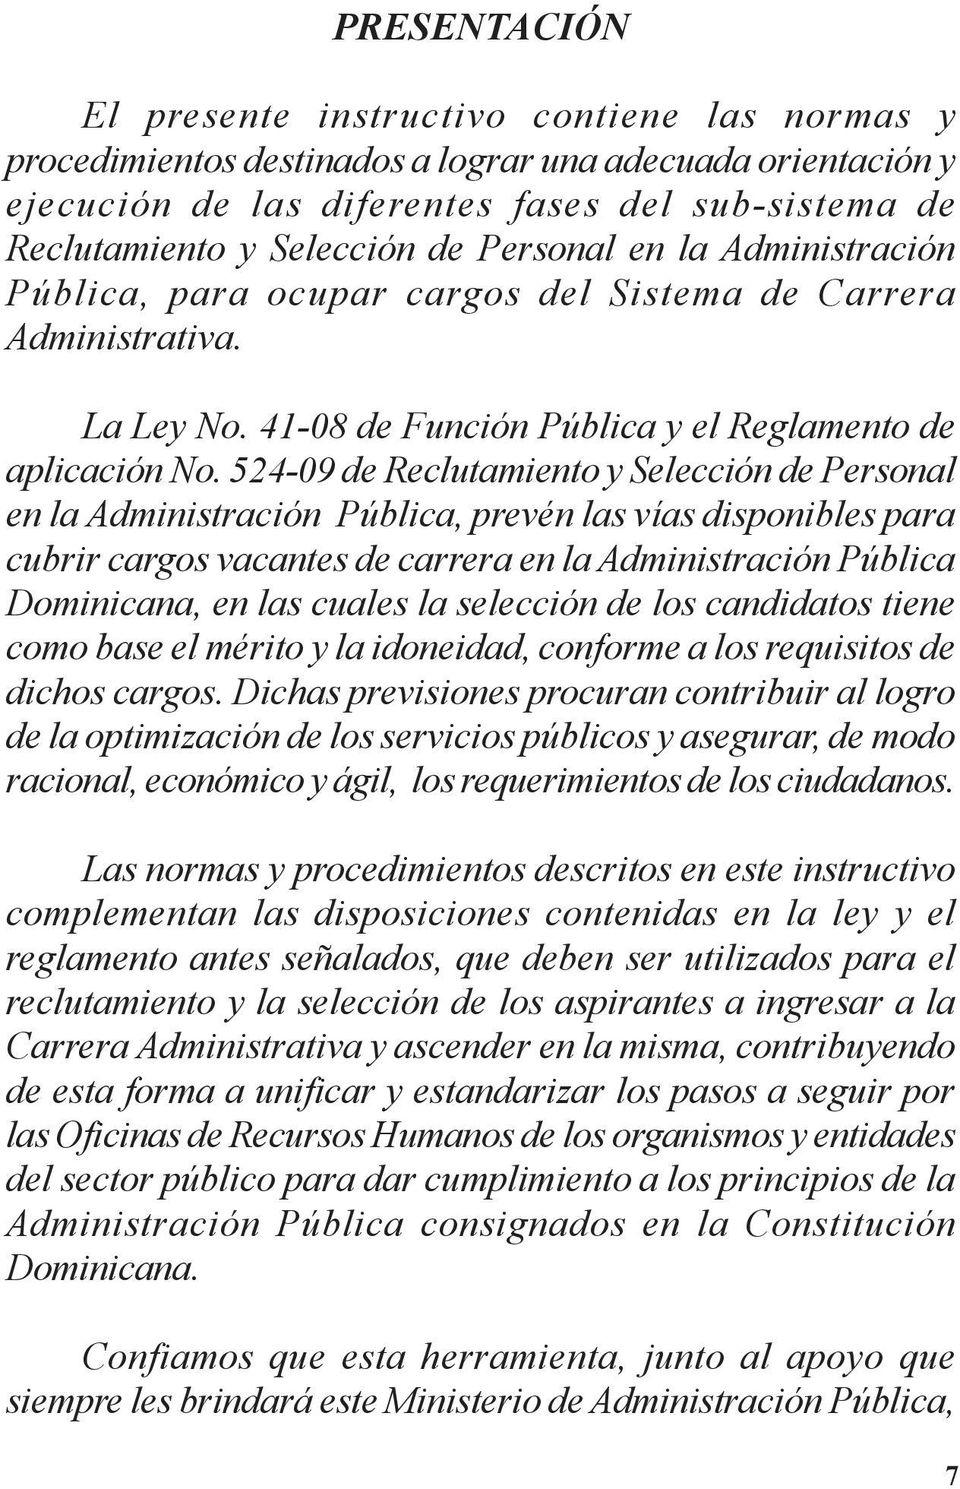 524-09 de Reclutamiento y Selección de Personal en la Administración Pública, prevén las vías disponibles para cubrir cargos vacantes de carrera en la Administración Pública Dominicana, en las cuales